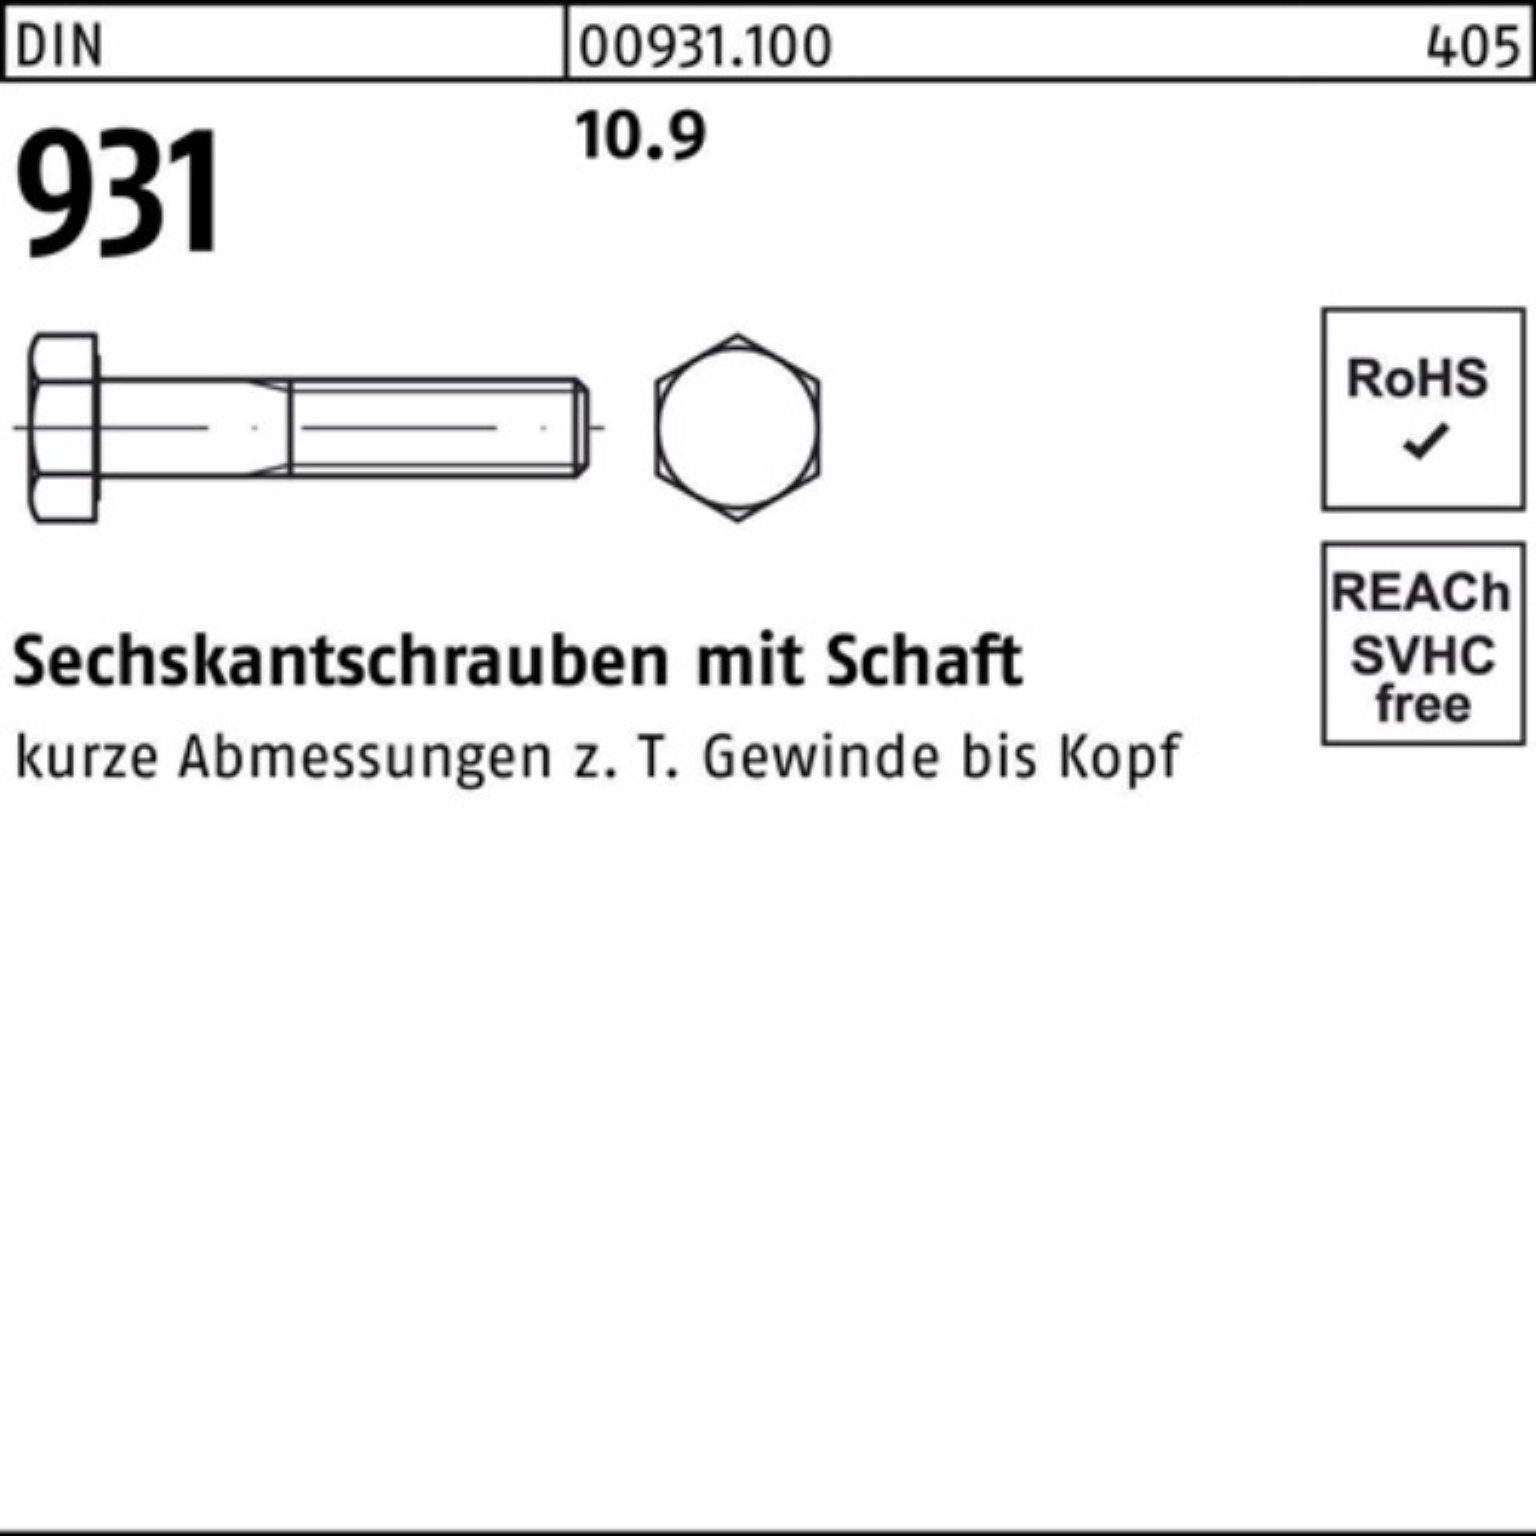 Reyher Sechskantschraube 100er Pack Schaft Sechskantschraube 10.9 270 DIN 1 DIN Stück 931 M36x